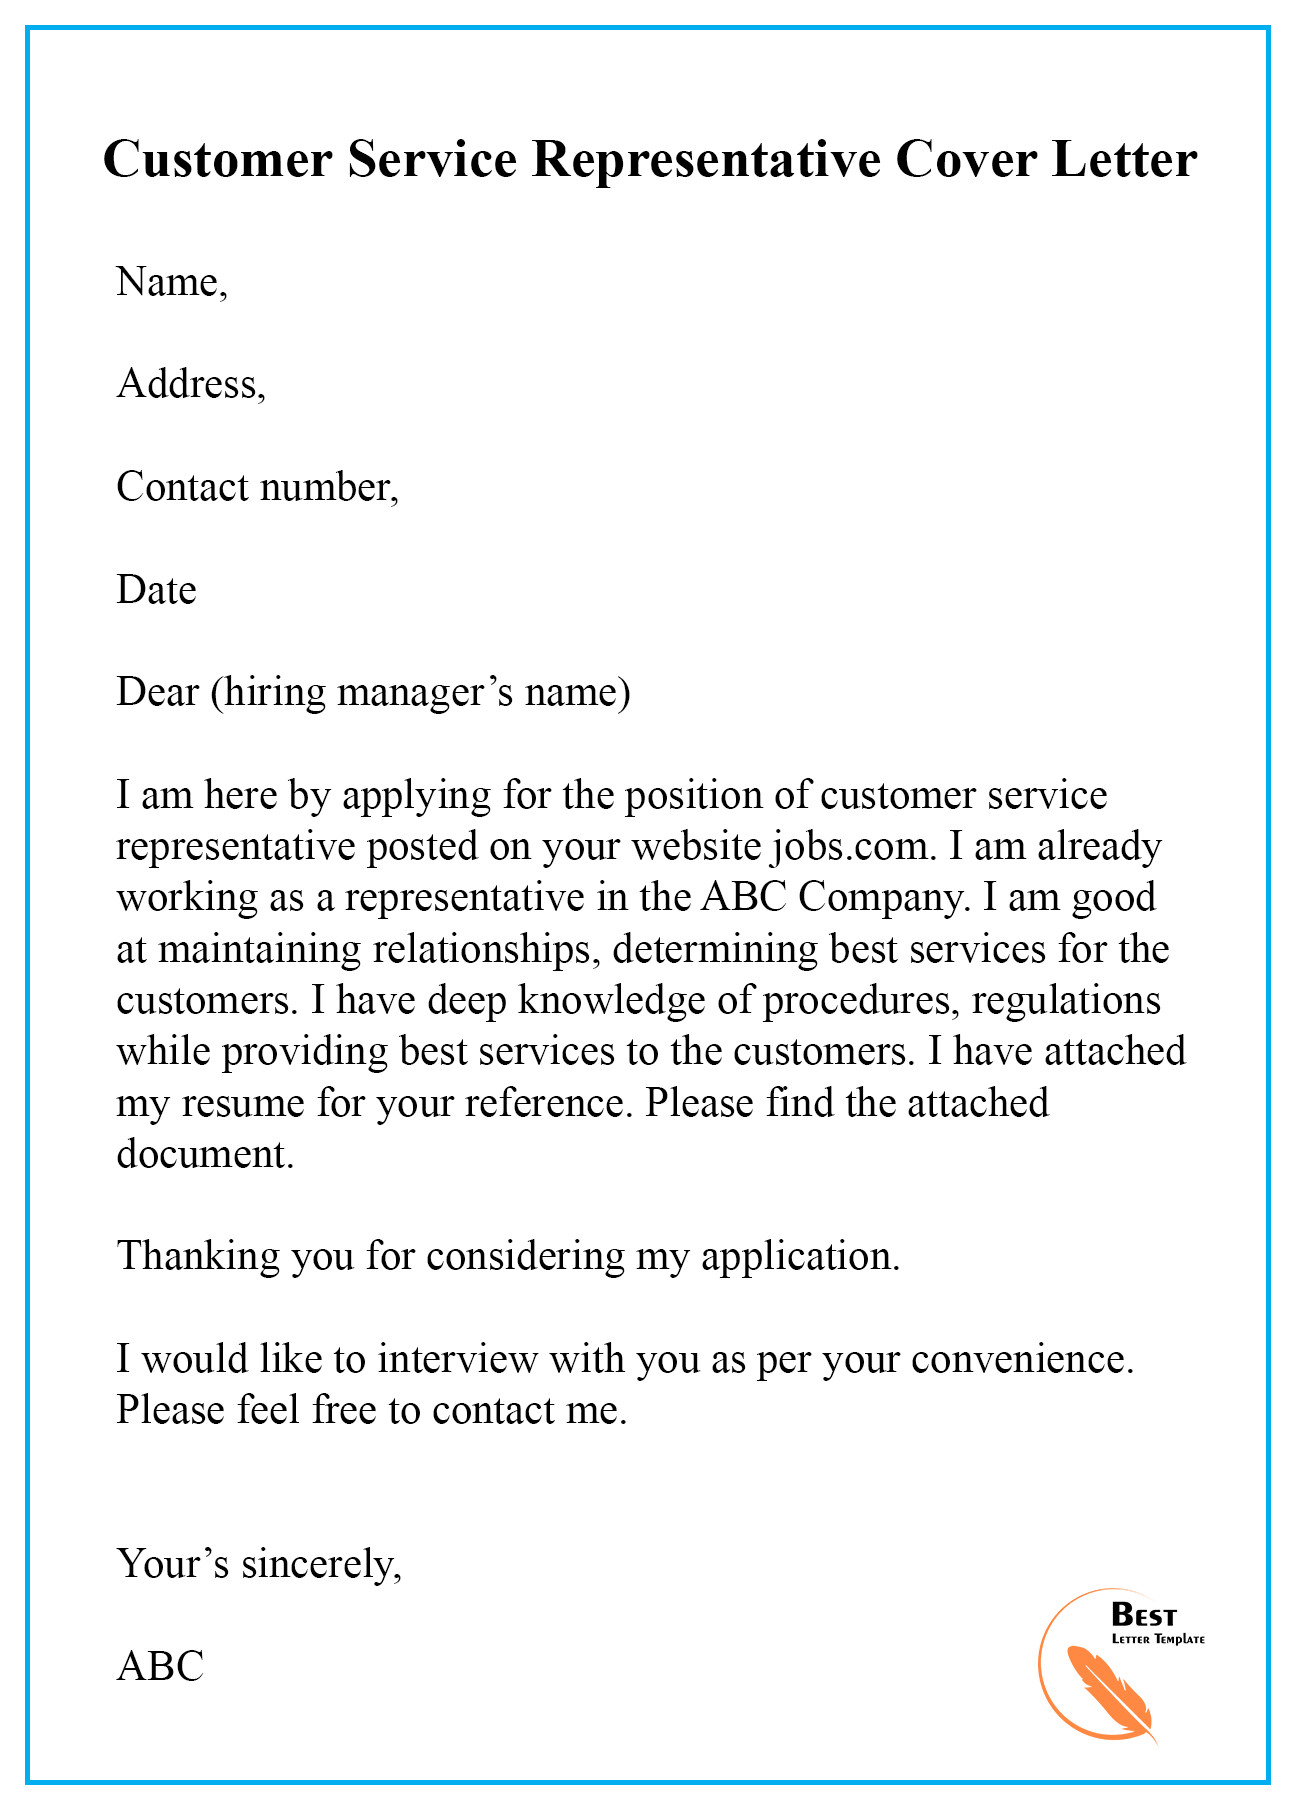 Sample Resume Cover Letter for Customer Service Representative Customer Service Representative Cover Letter Sample for